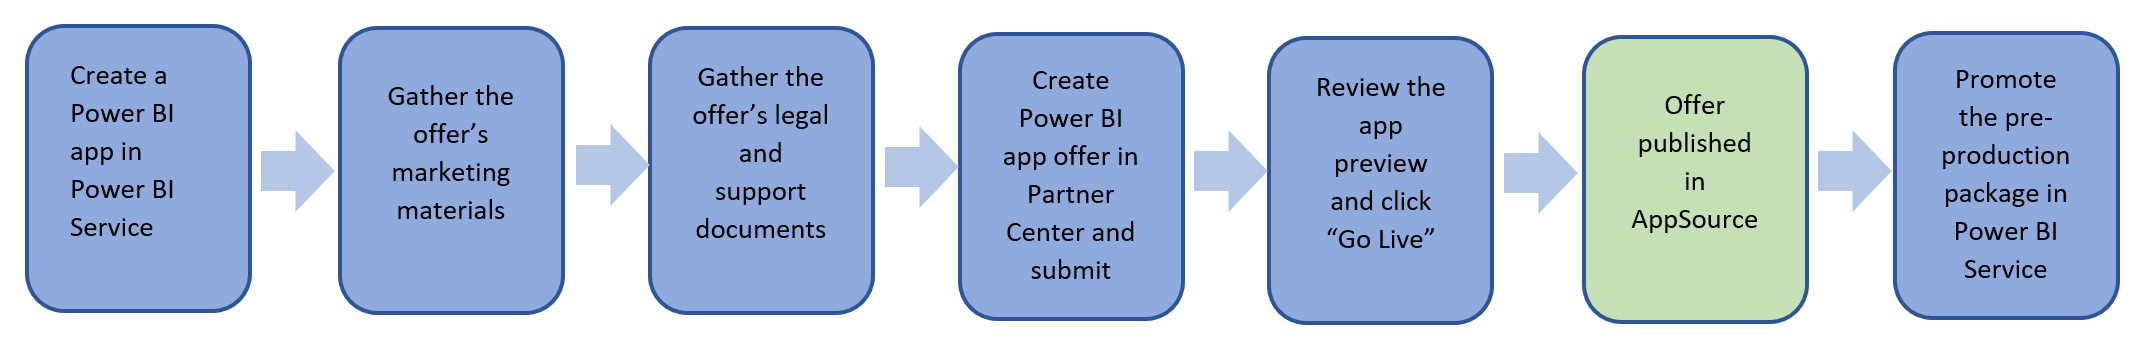 發佈 Power BI 應用程式供應專案的步驟概觀。